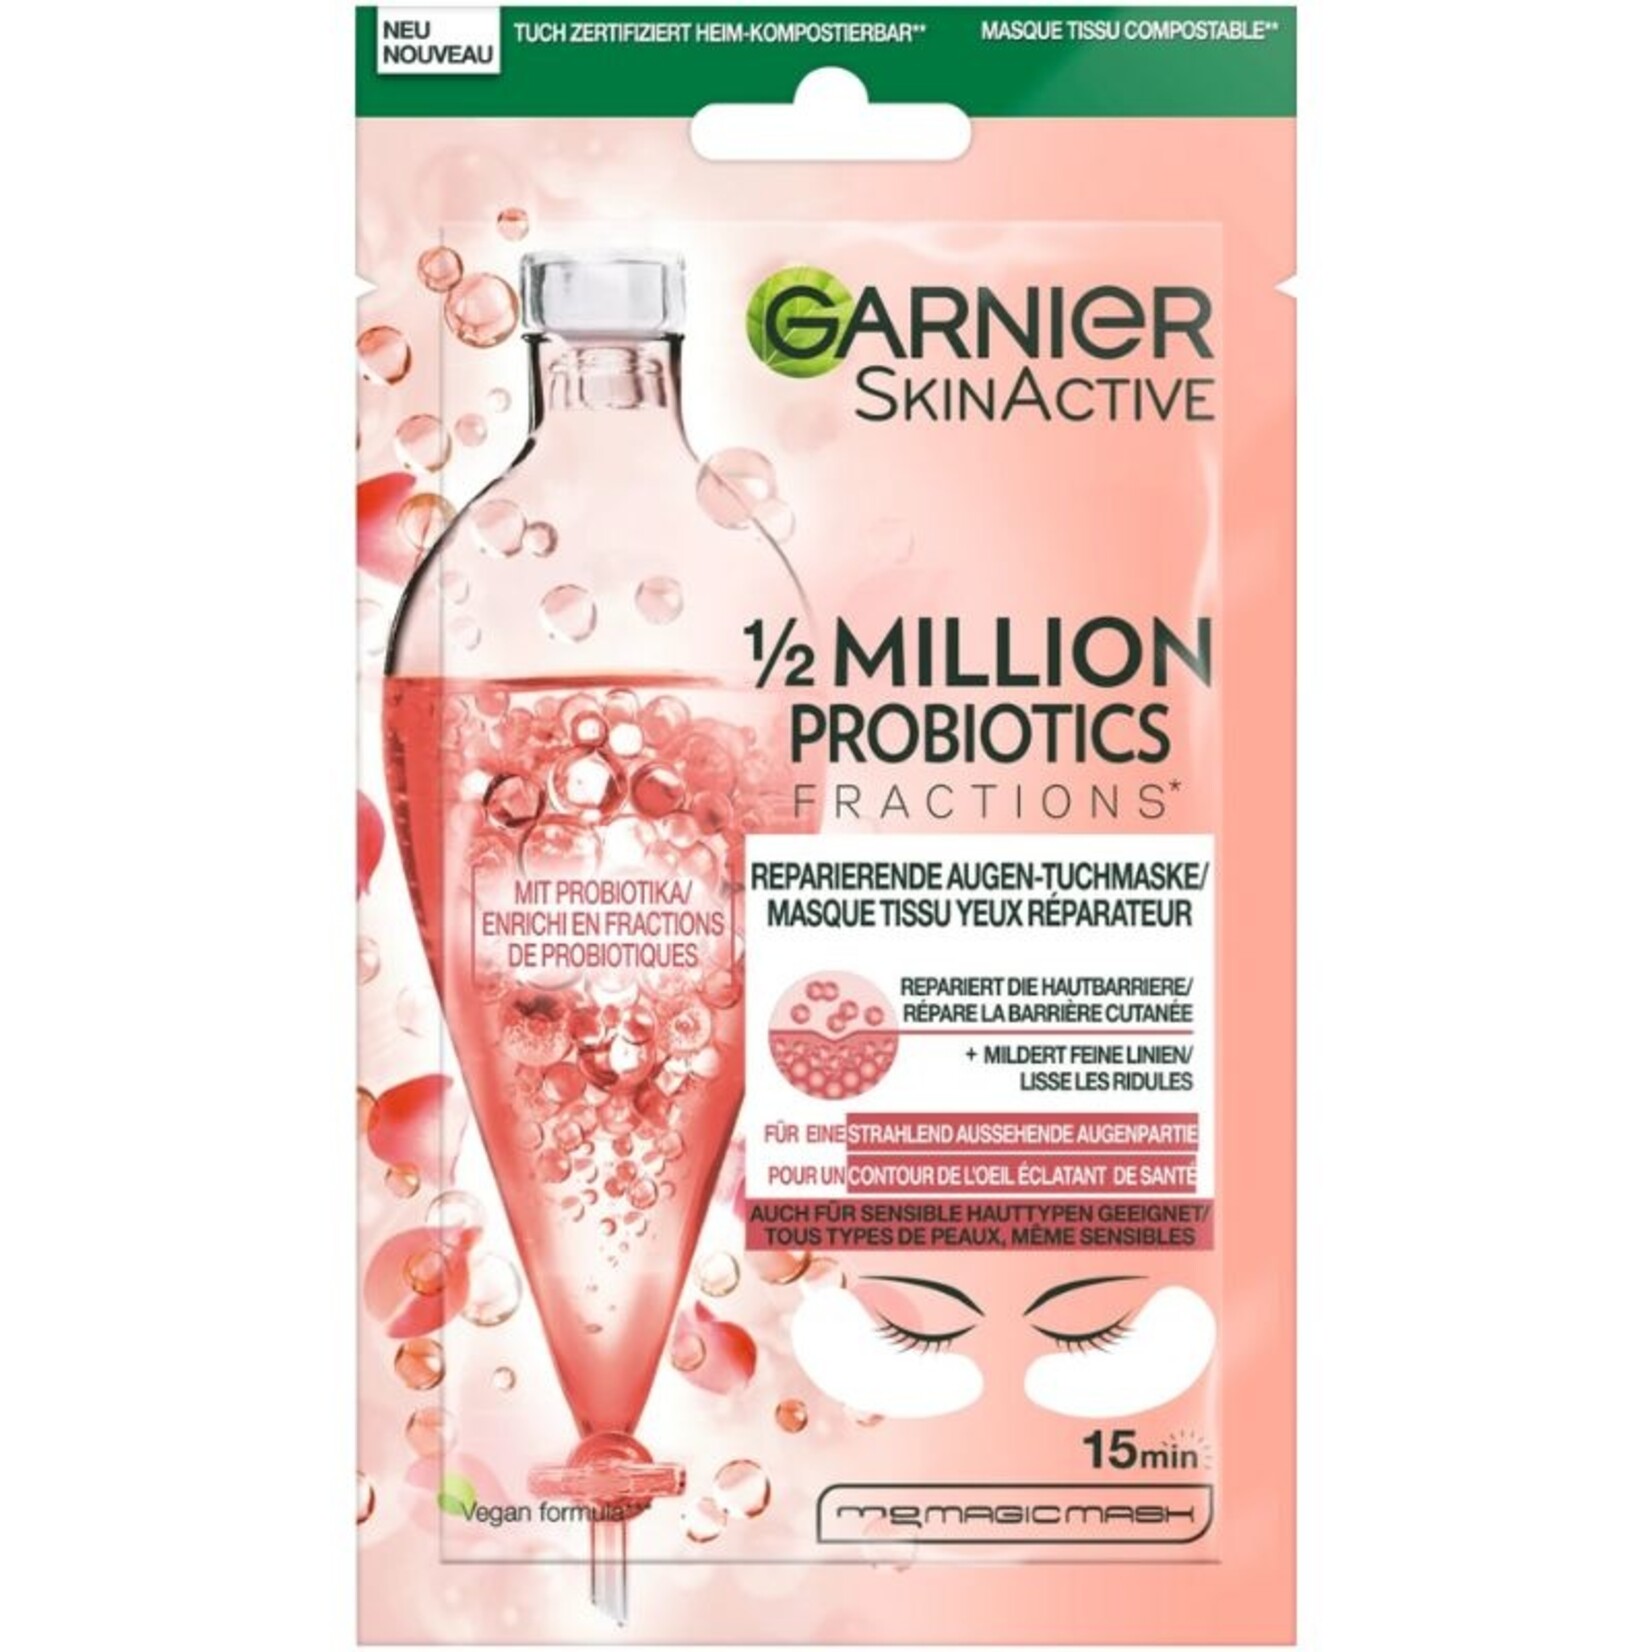 Garnier SkinActive Probiotics Million Augentuchmaske - 1/2